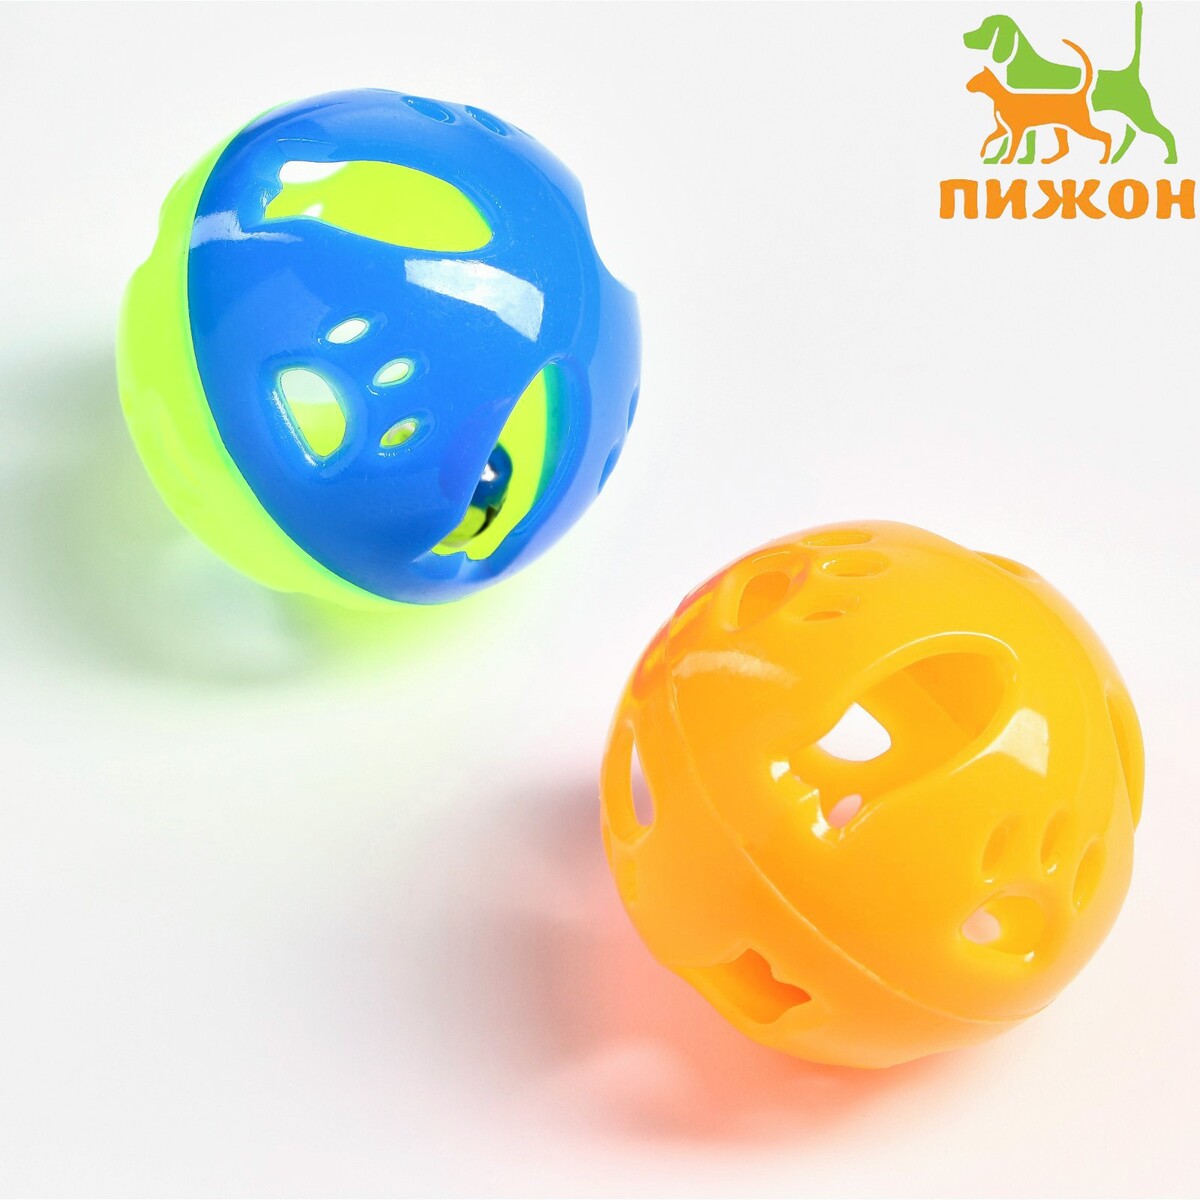 Набор из 2 шариков-погремушек набор для моделирования кондитерских украшений konfinetta 4 шт диаметры шариков 0 4 см 0 6 см 0 8 см 1 см 1 1 см 1 3 см 1 6 см 2 см